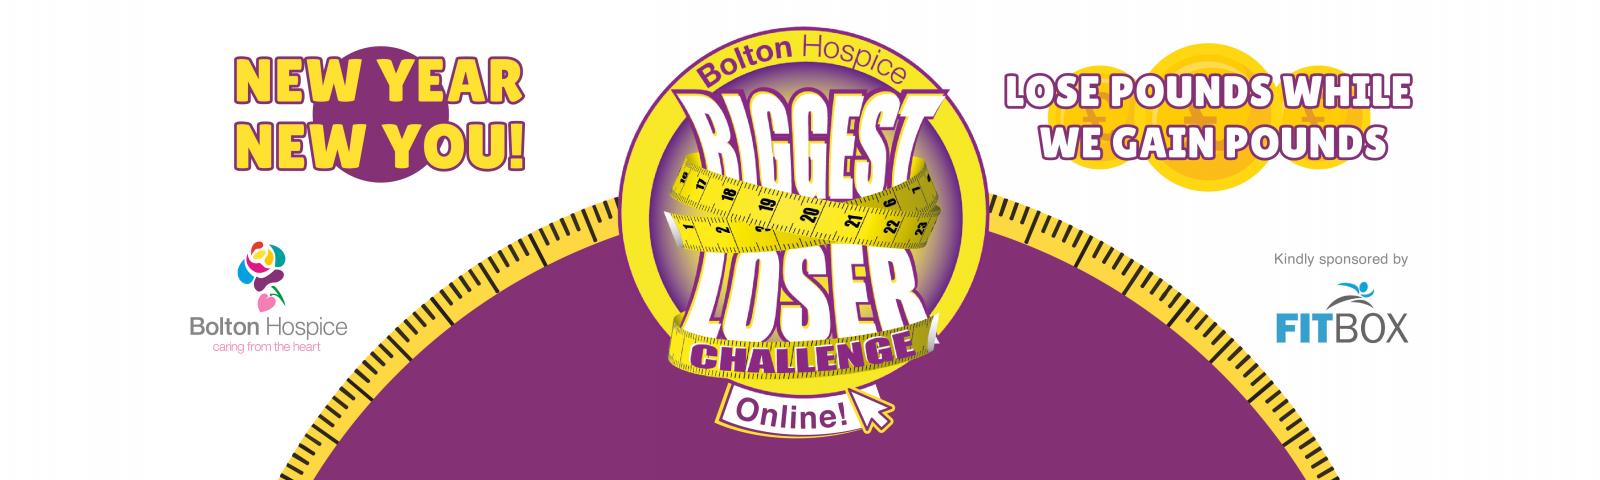 Biggest Loser Challenge Online 2021 Bolton Hospice